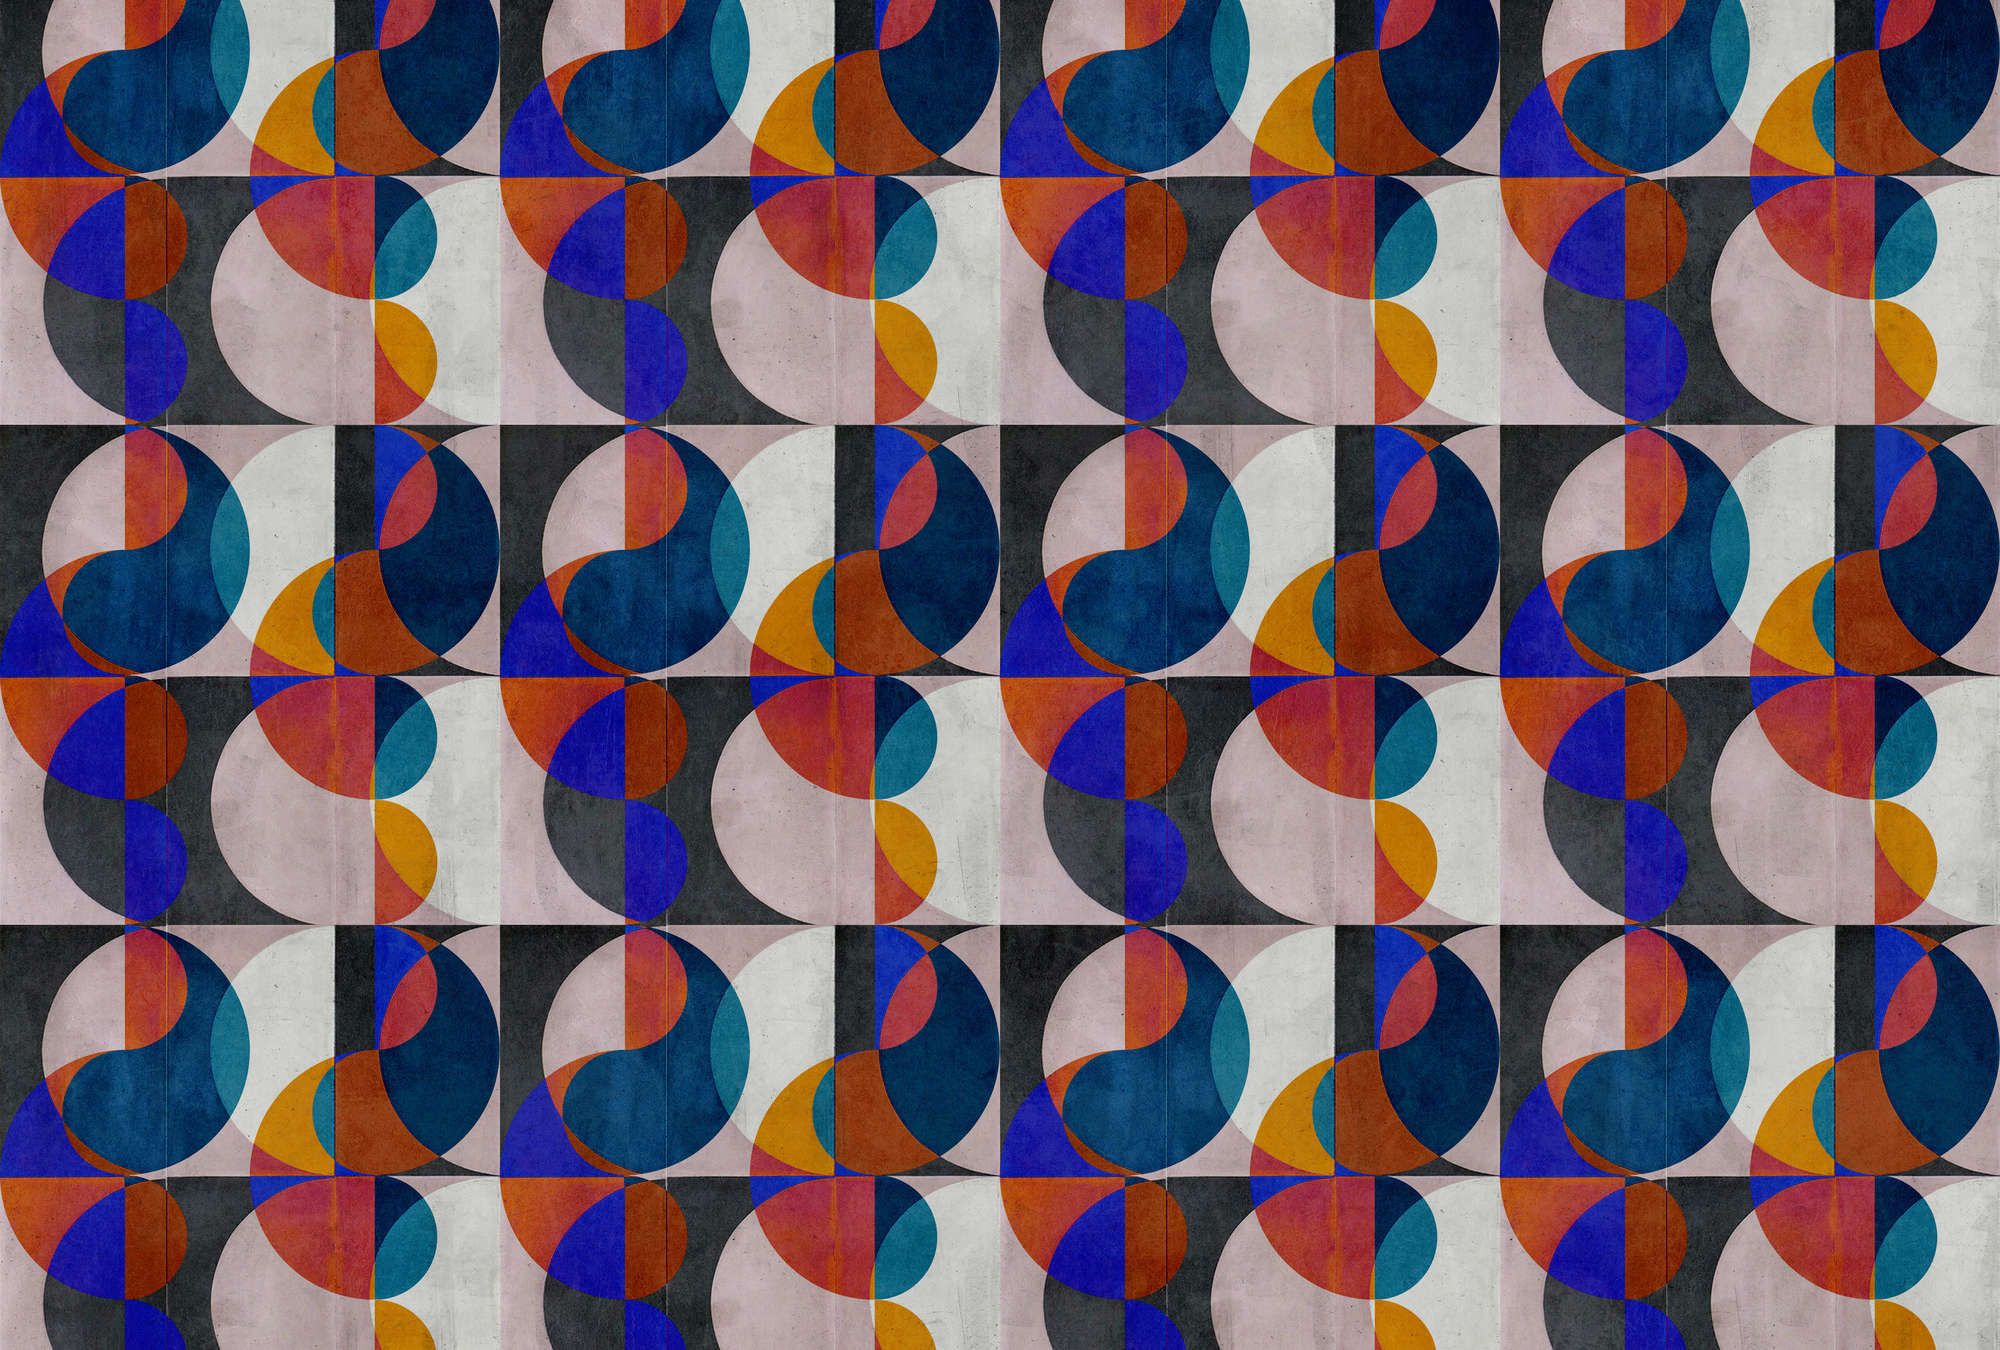             Digital behang »mia« - abstract retro patroon op betonnen pleisterstructuur - kleurrijk | mat, glad vlies
        